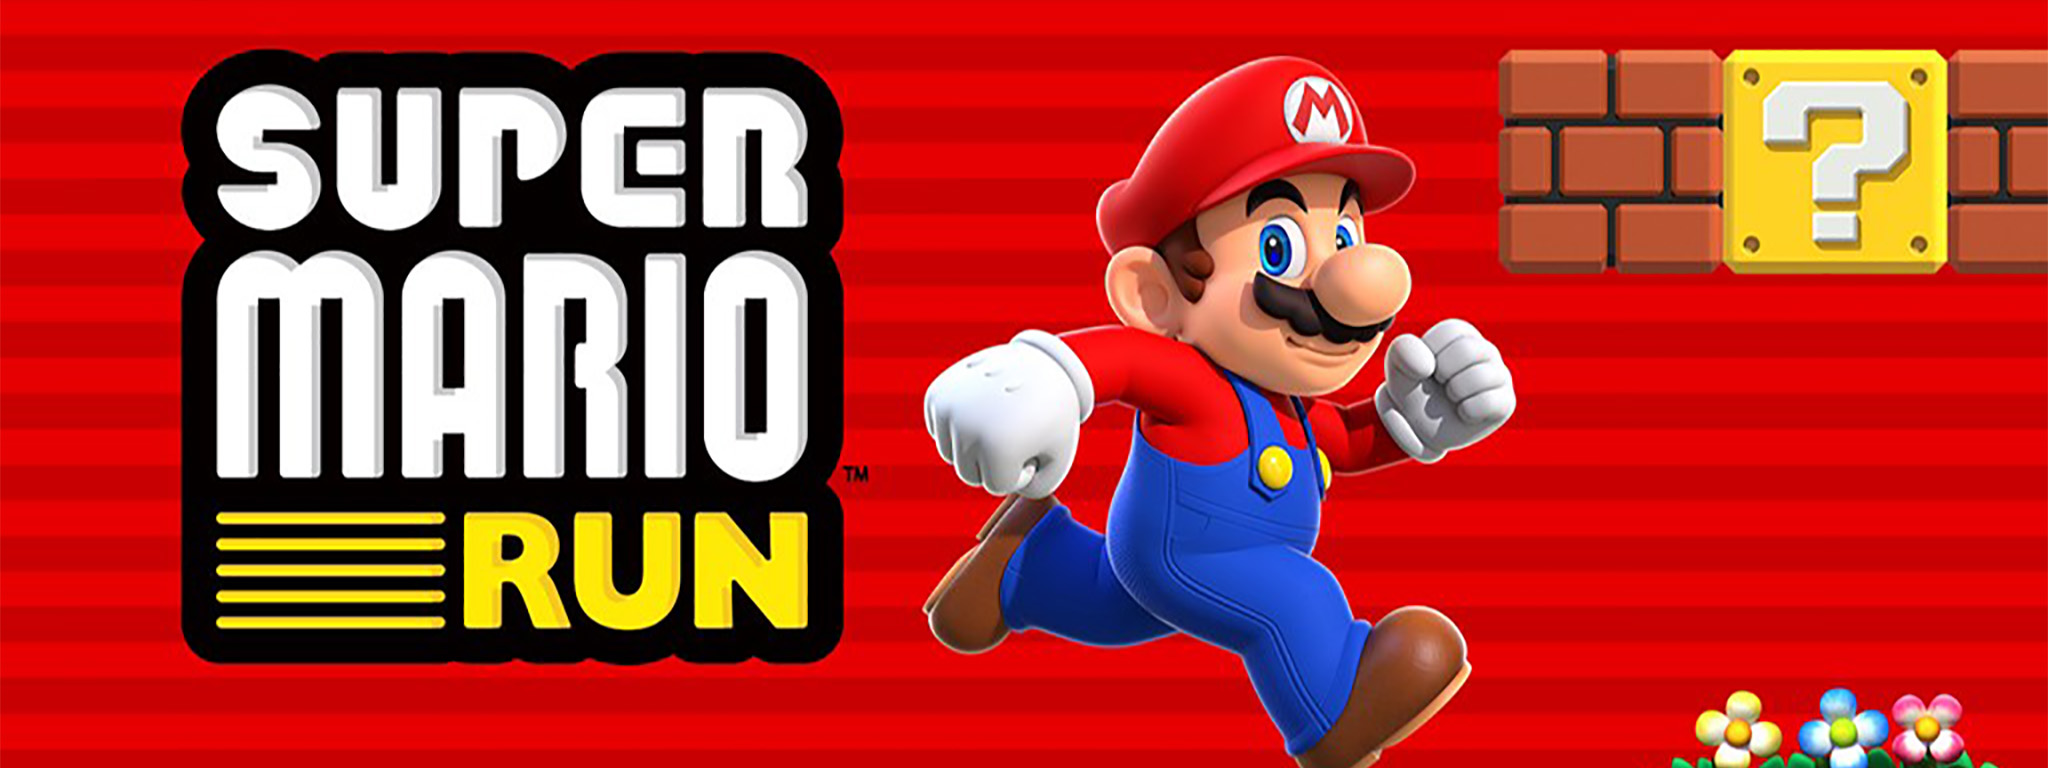 Nintendo xác nhận Super Mario Run trên iOS sẽ cho tải về vào ngày 15/12